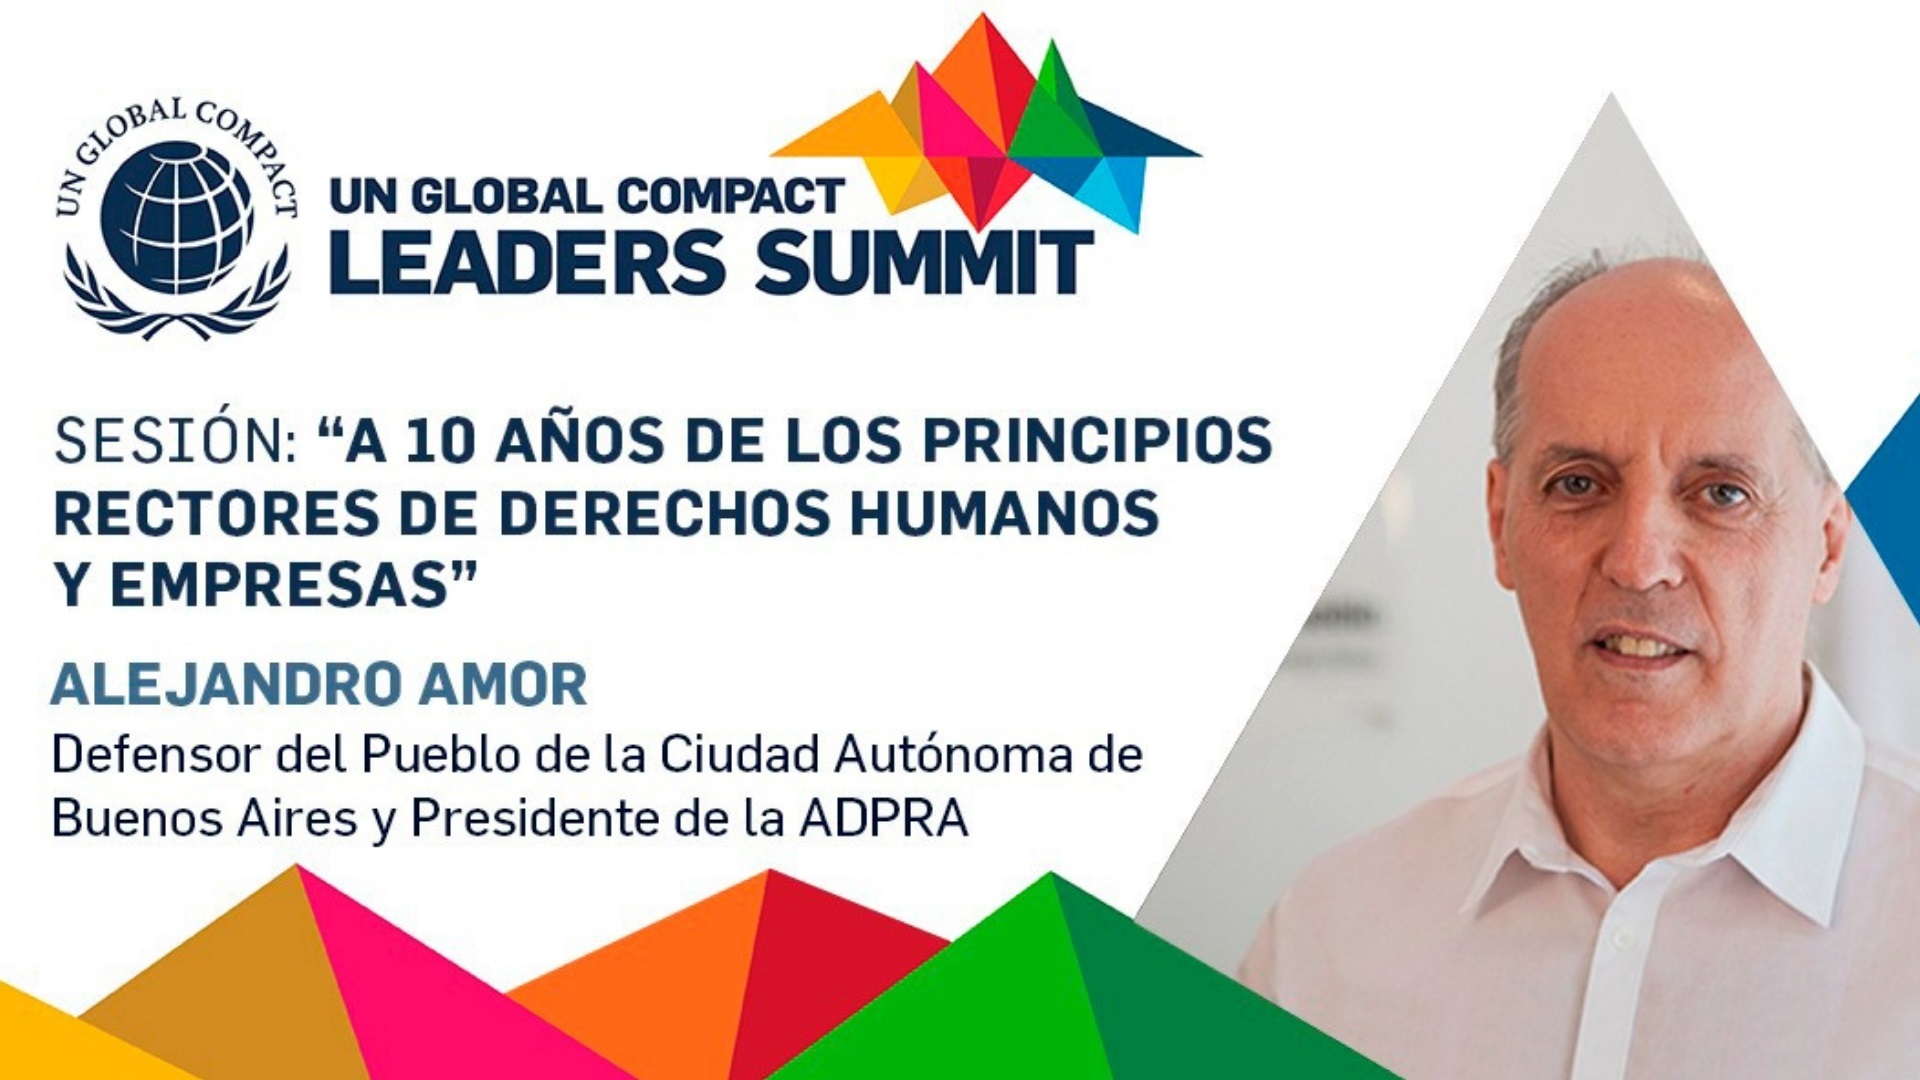 Alejandro Amor, Defensor del Pueblo de la Ciudad Autónoma de Buenos Aires (Créditos: Cumbre de Líderes de Pacto Global)